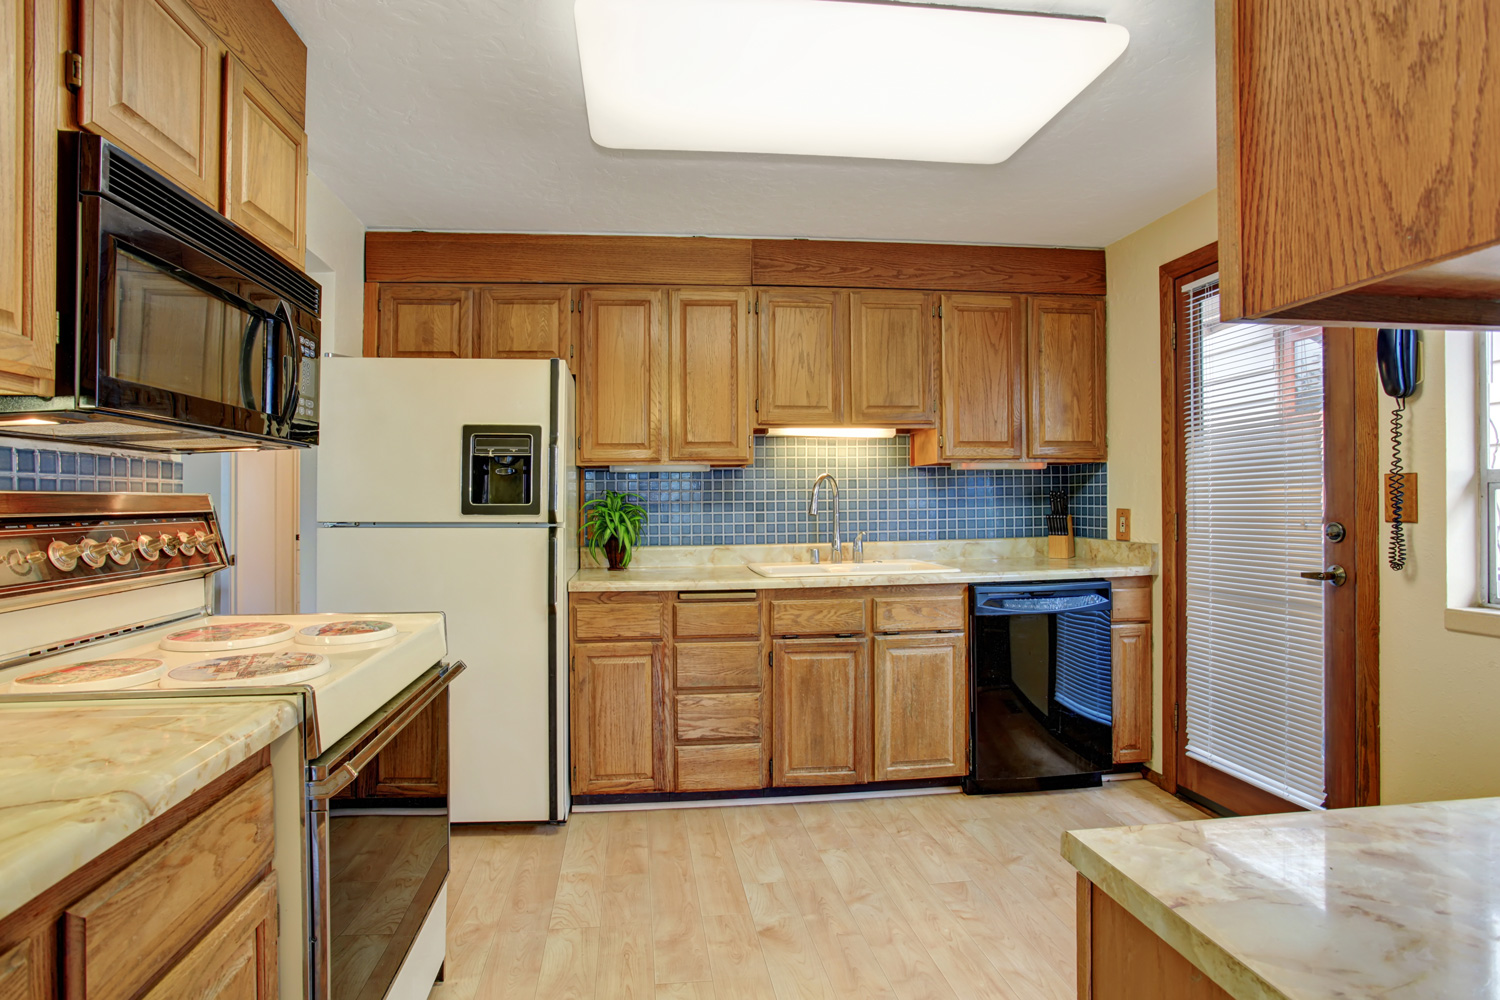 Simple kitchen with hardwood floor and a door.